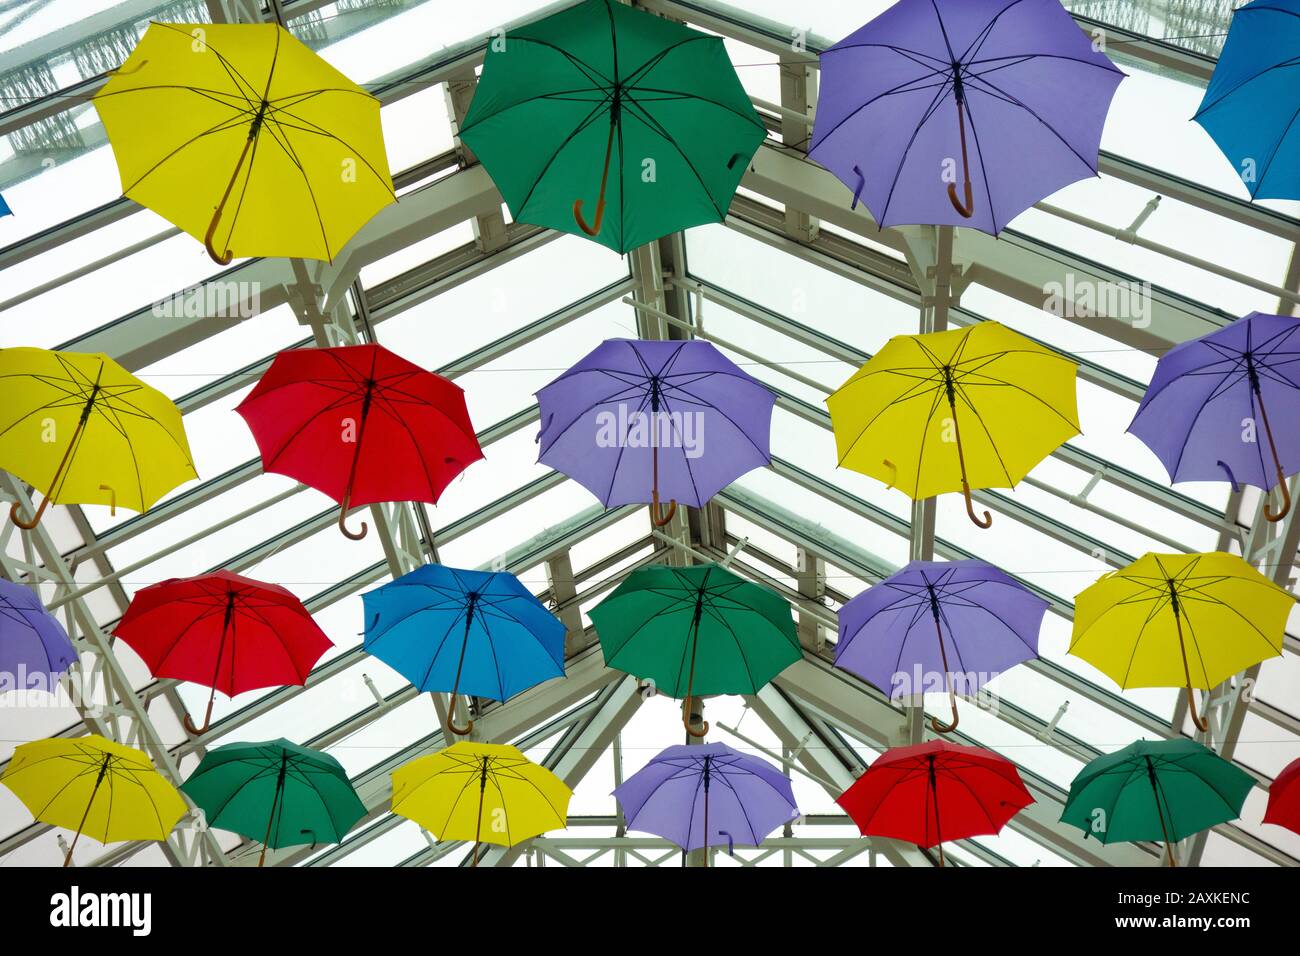 Bunte Sonnenschirme Als Dekoration In Der Luft Mit Gläserner Deckenfeier und Dekoration Stockfoto